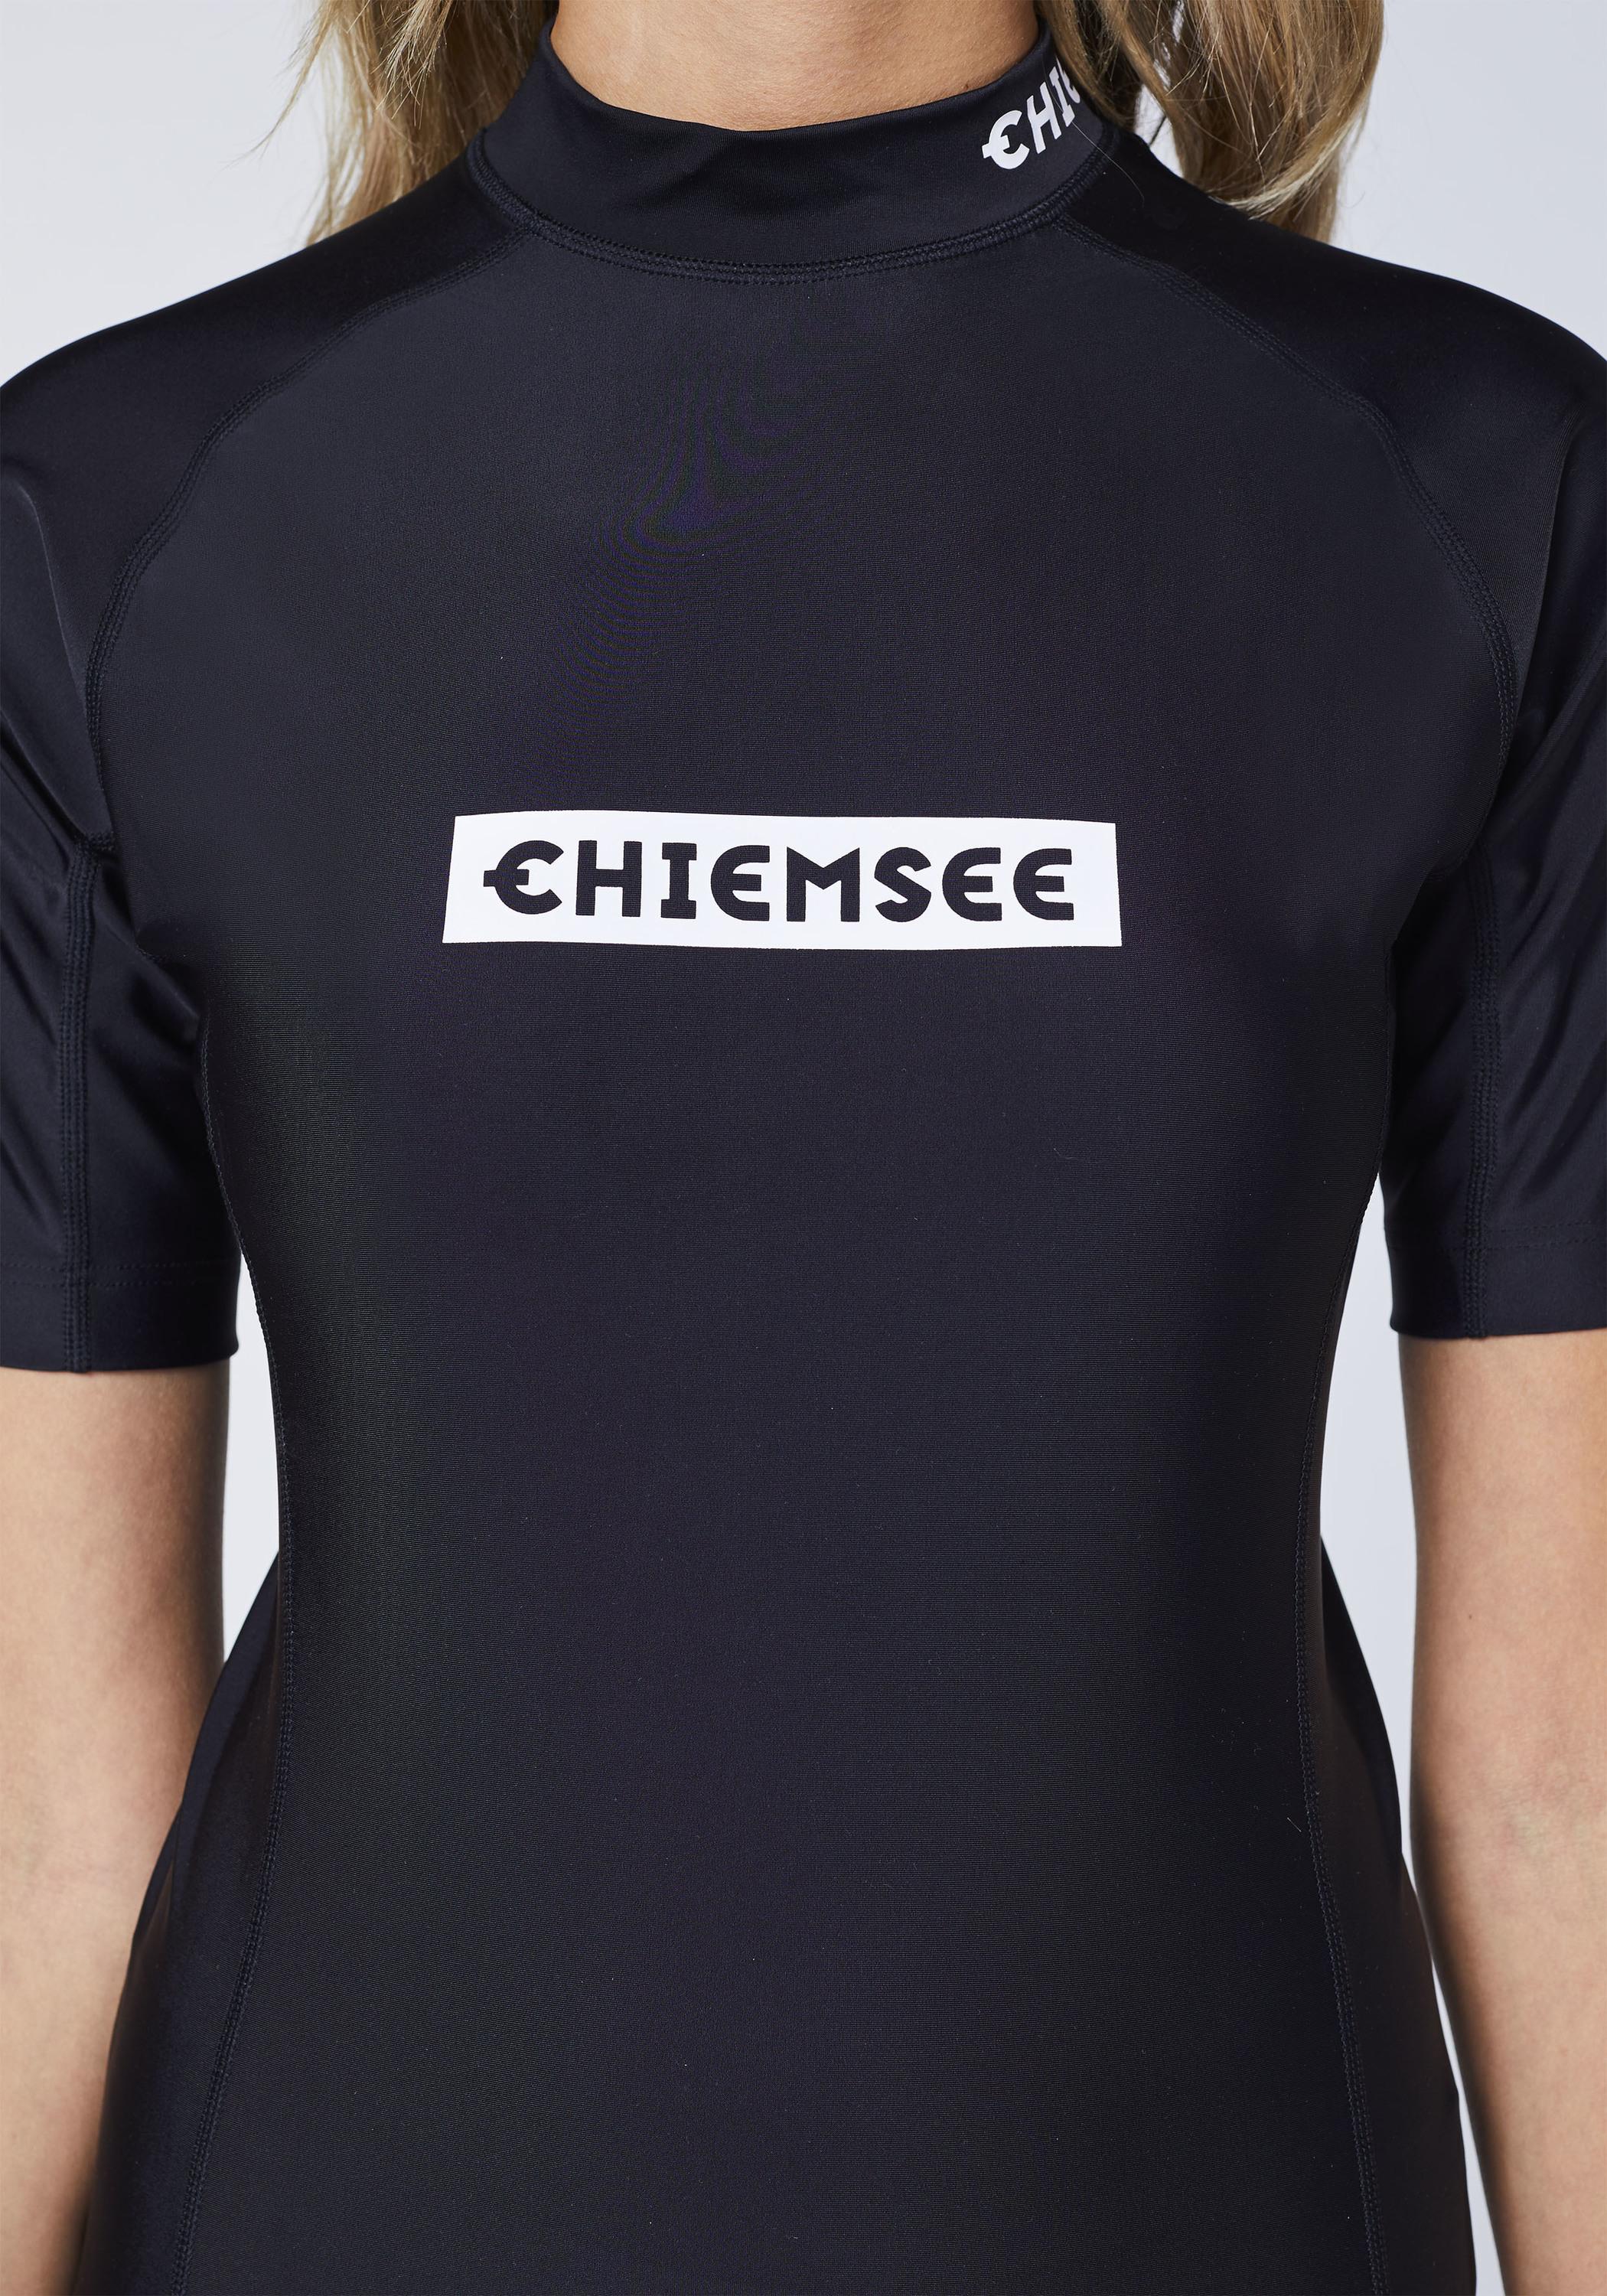 Chiemsee Badeshirt im kaufen new von Surf Online Shop SportScheck Shirt Deep Black